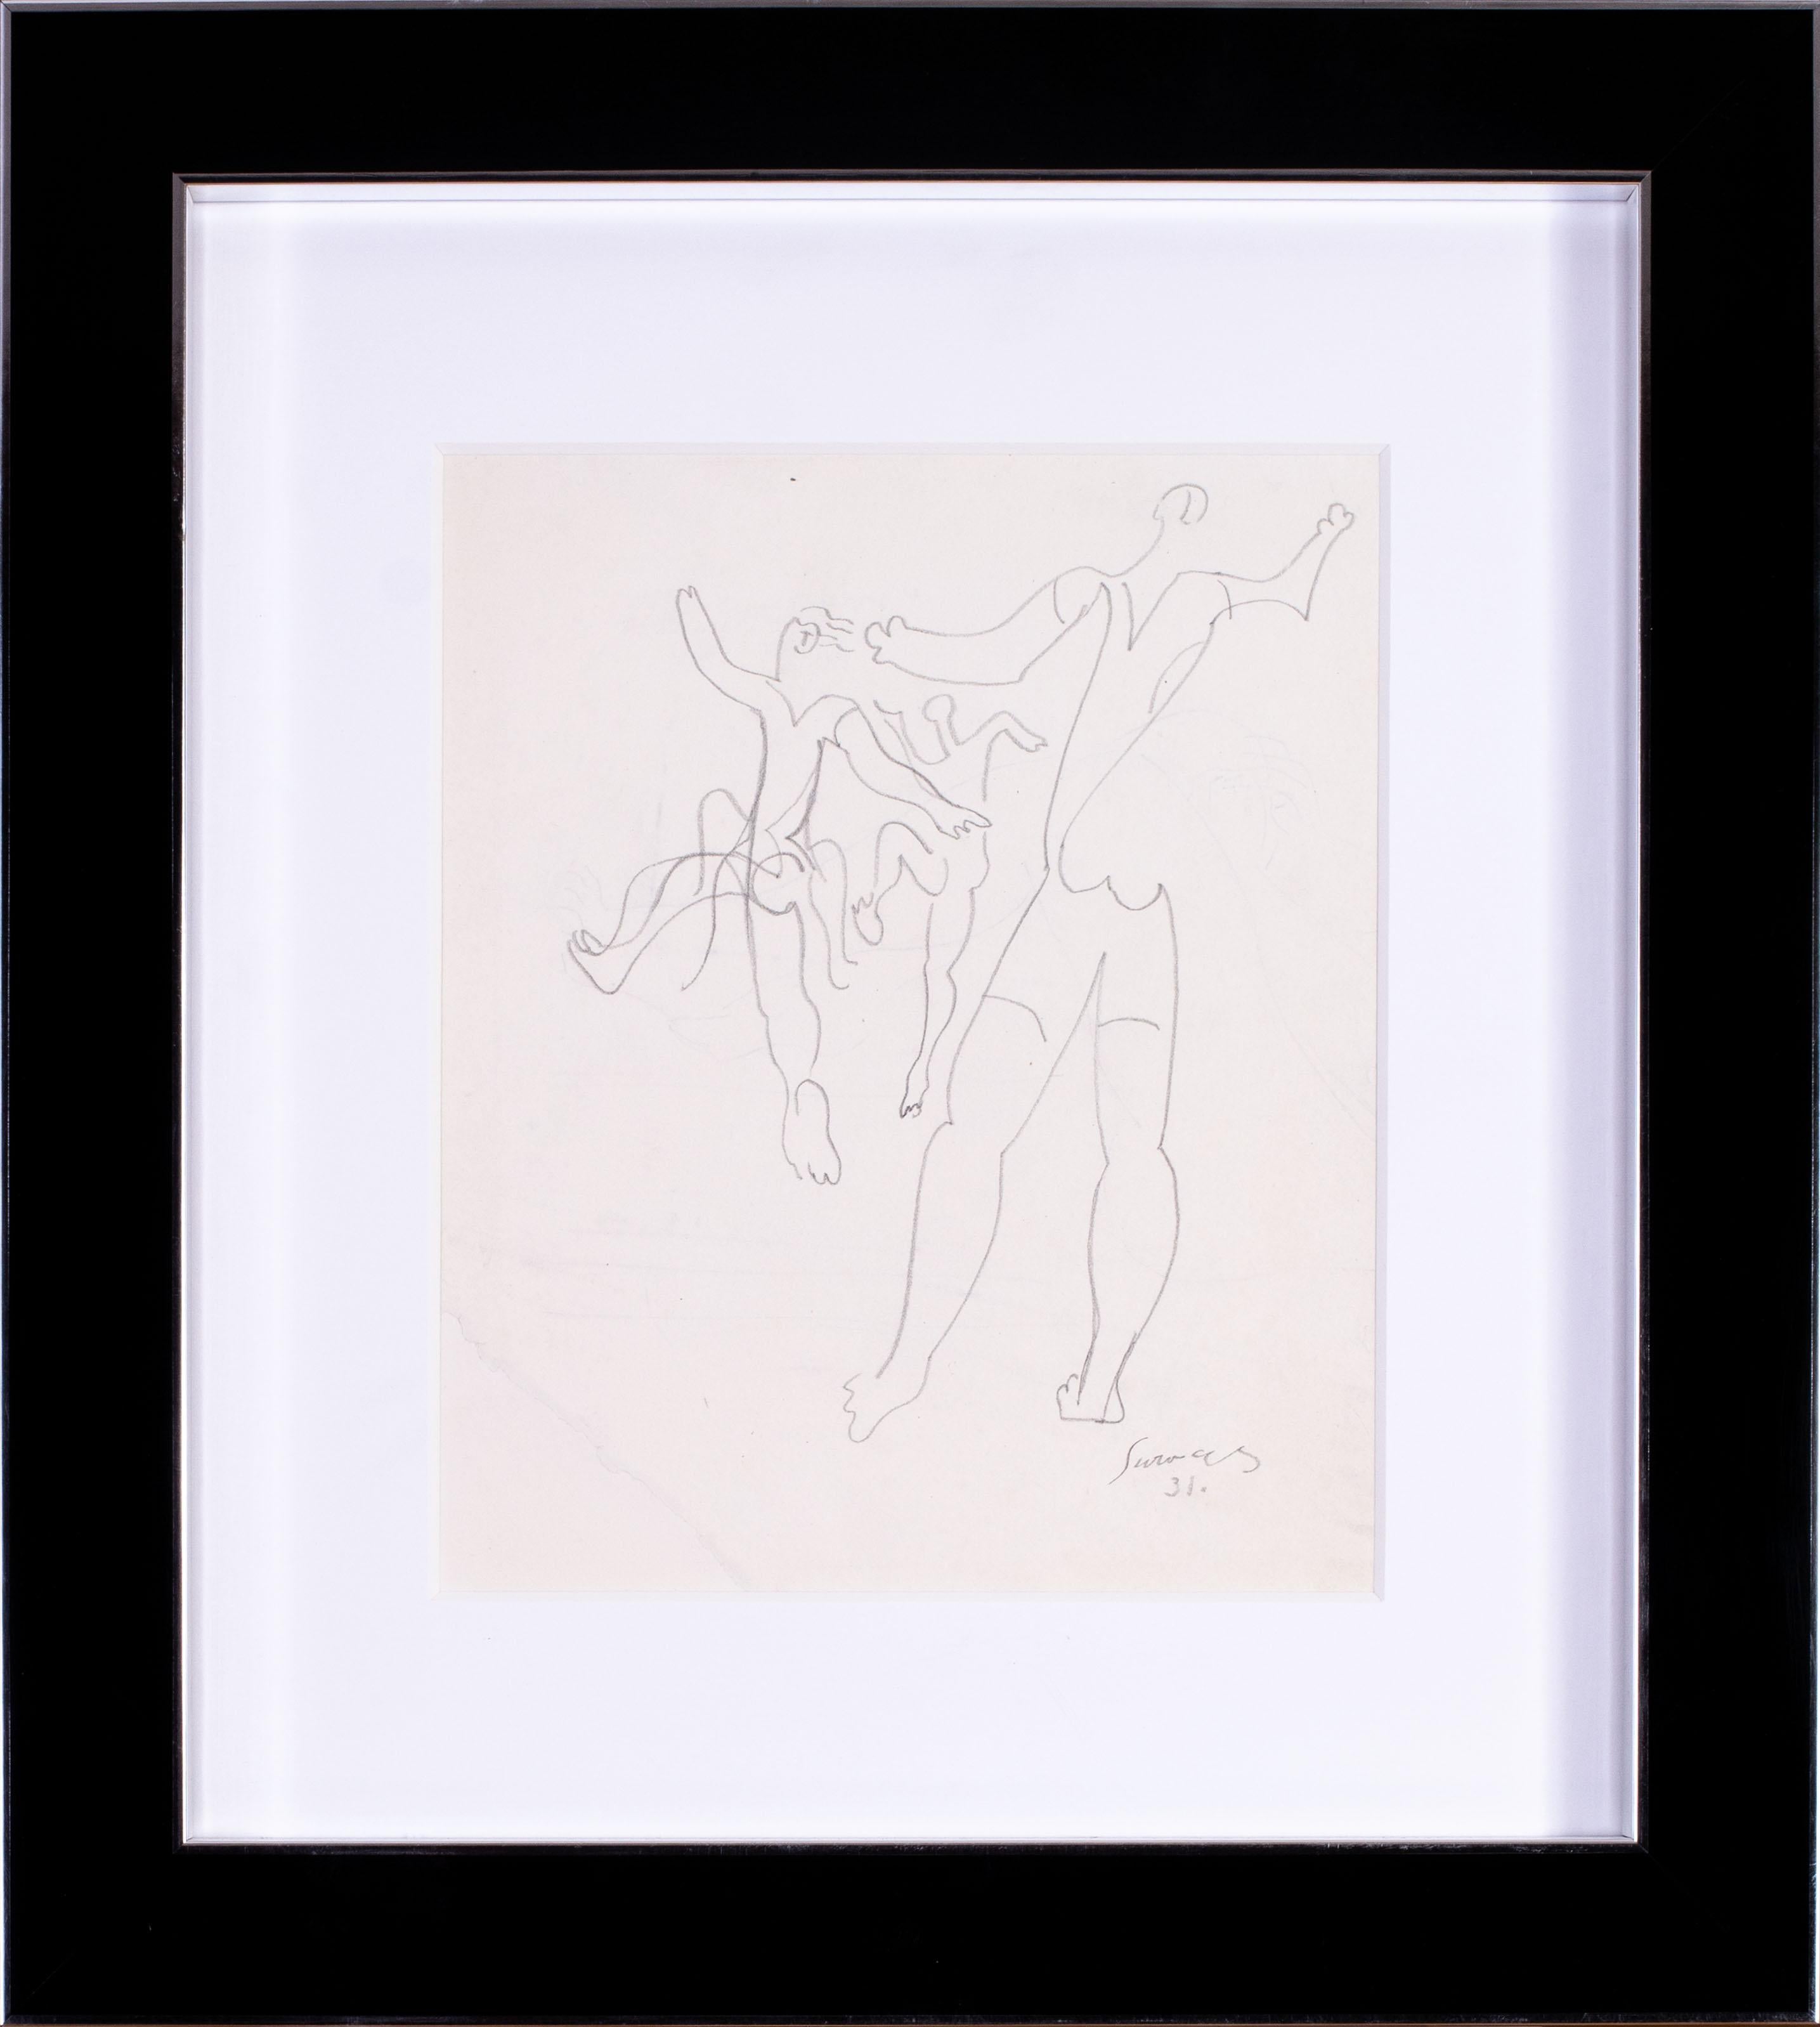 Le dessin français de 1931 de l'artiste cubiste Leopold Survage, représentant des danseurs